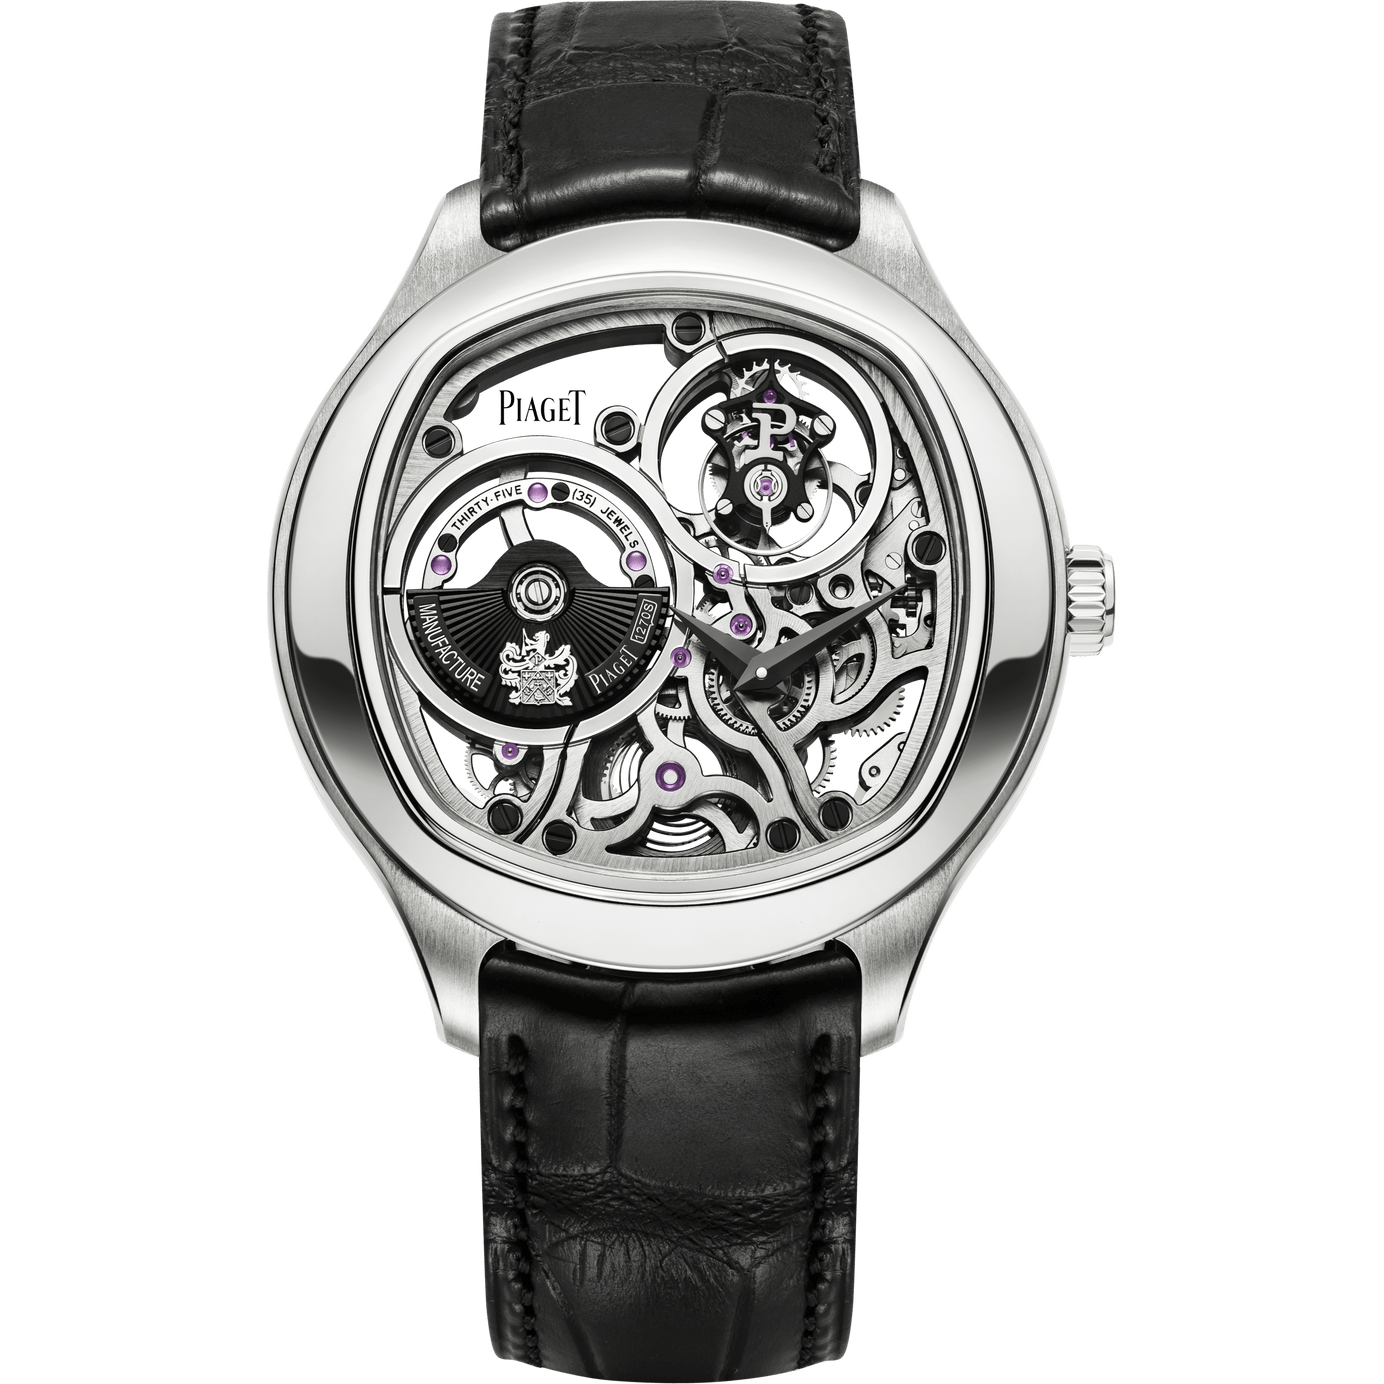 Piaget Polo Emperador Skeleton Tourbillon watch